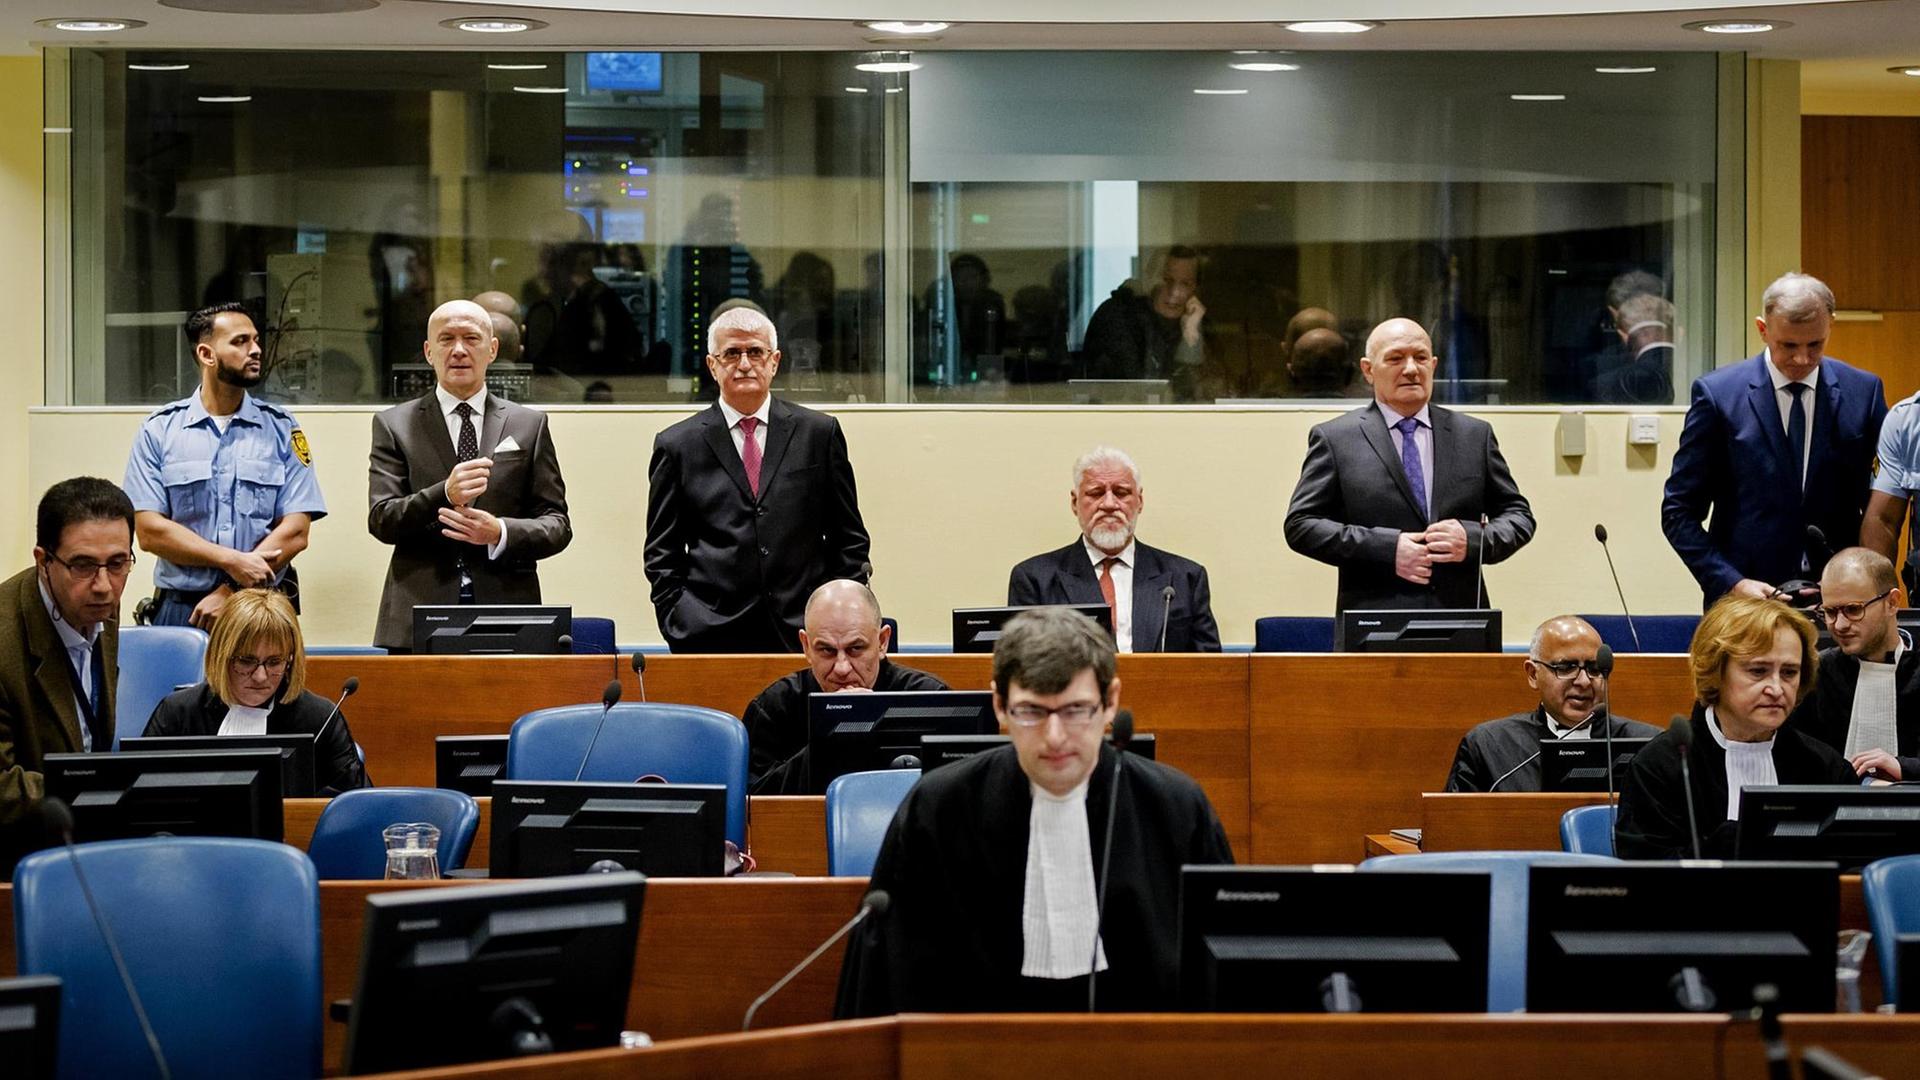 Die Angeklagten Jadranko Prlic, Bruno Stojic, Slobodan Praljak, Milivoj Petkovic und Valentin Coric kommen am 29.11.2017 in den Gerichtsaal des UNO-Kriegsverbrechertribunal zum früheren Jugoslawien in Den Haag.